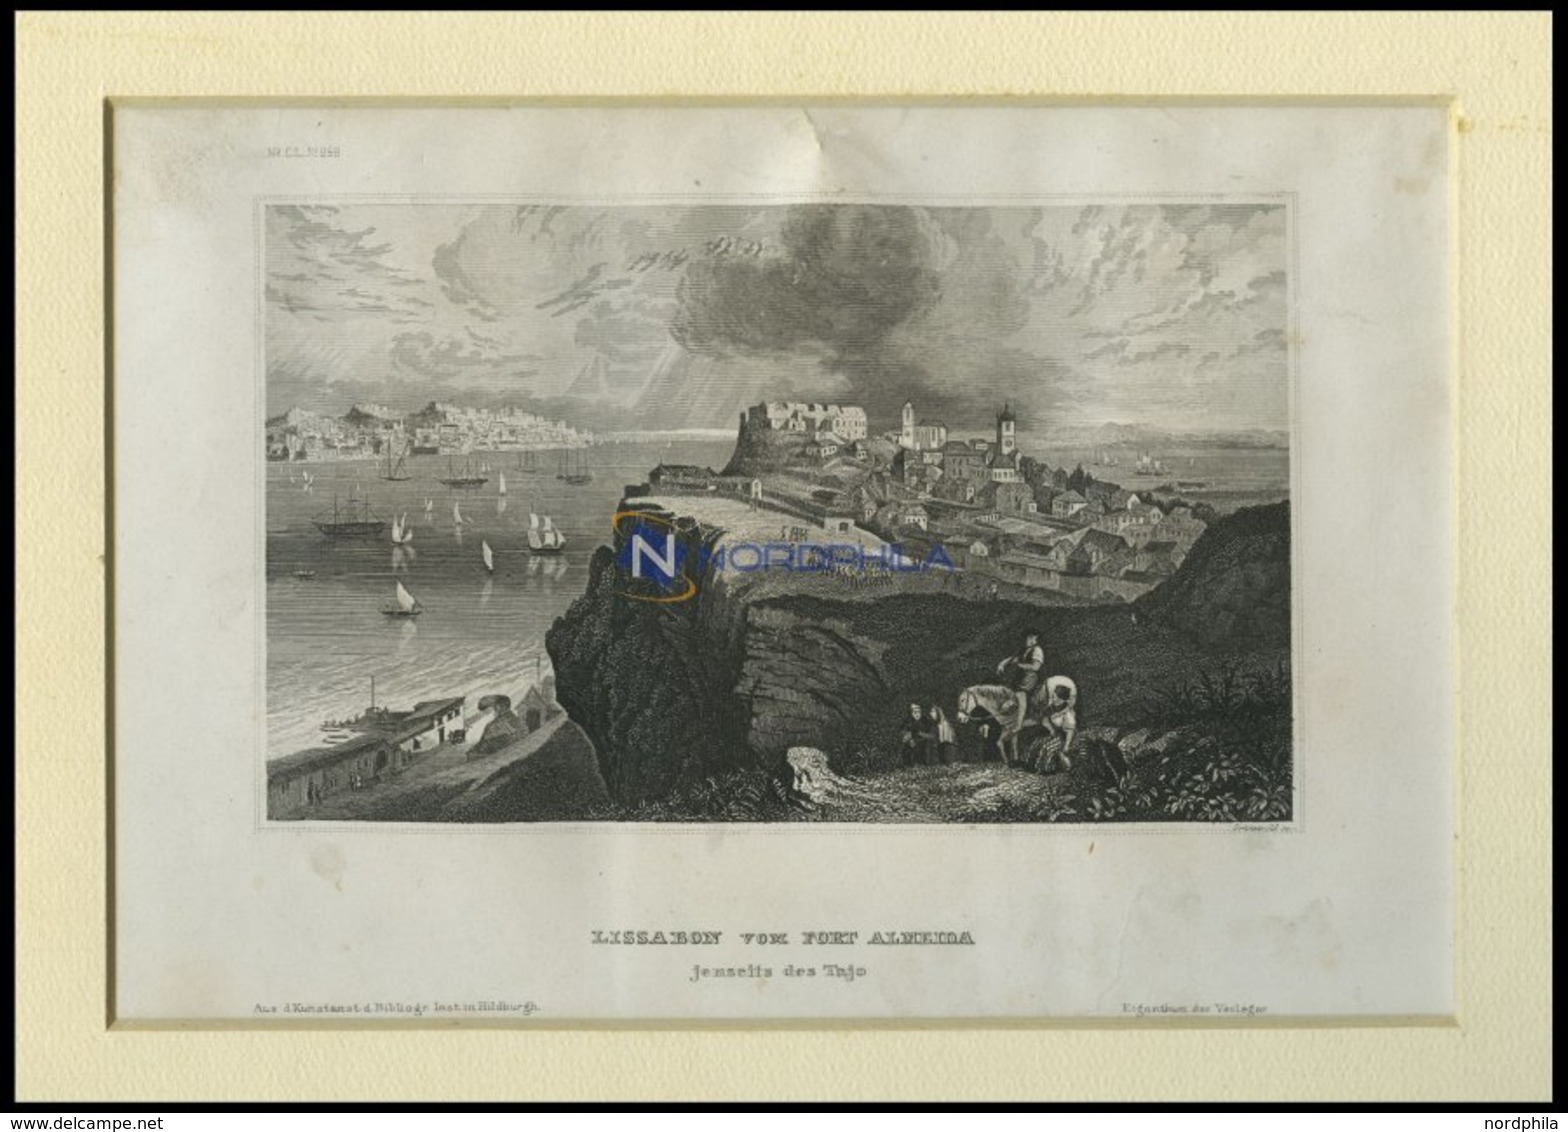 LISSABON Vom Fort Almeida Aus Gesehen, Stahlstich Von B.I. Um 1840 - Lithographies